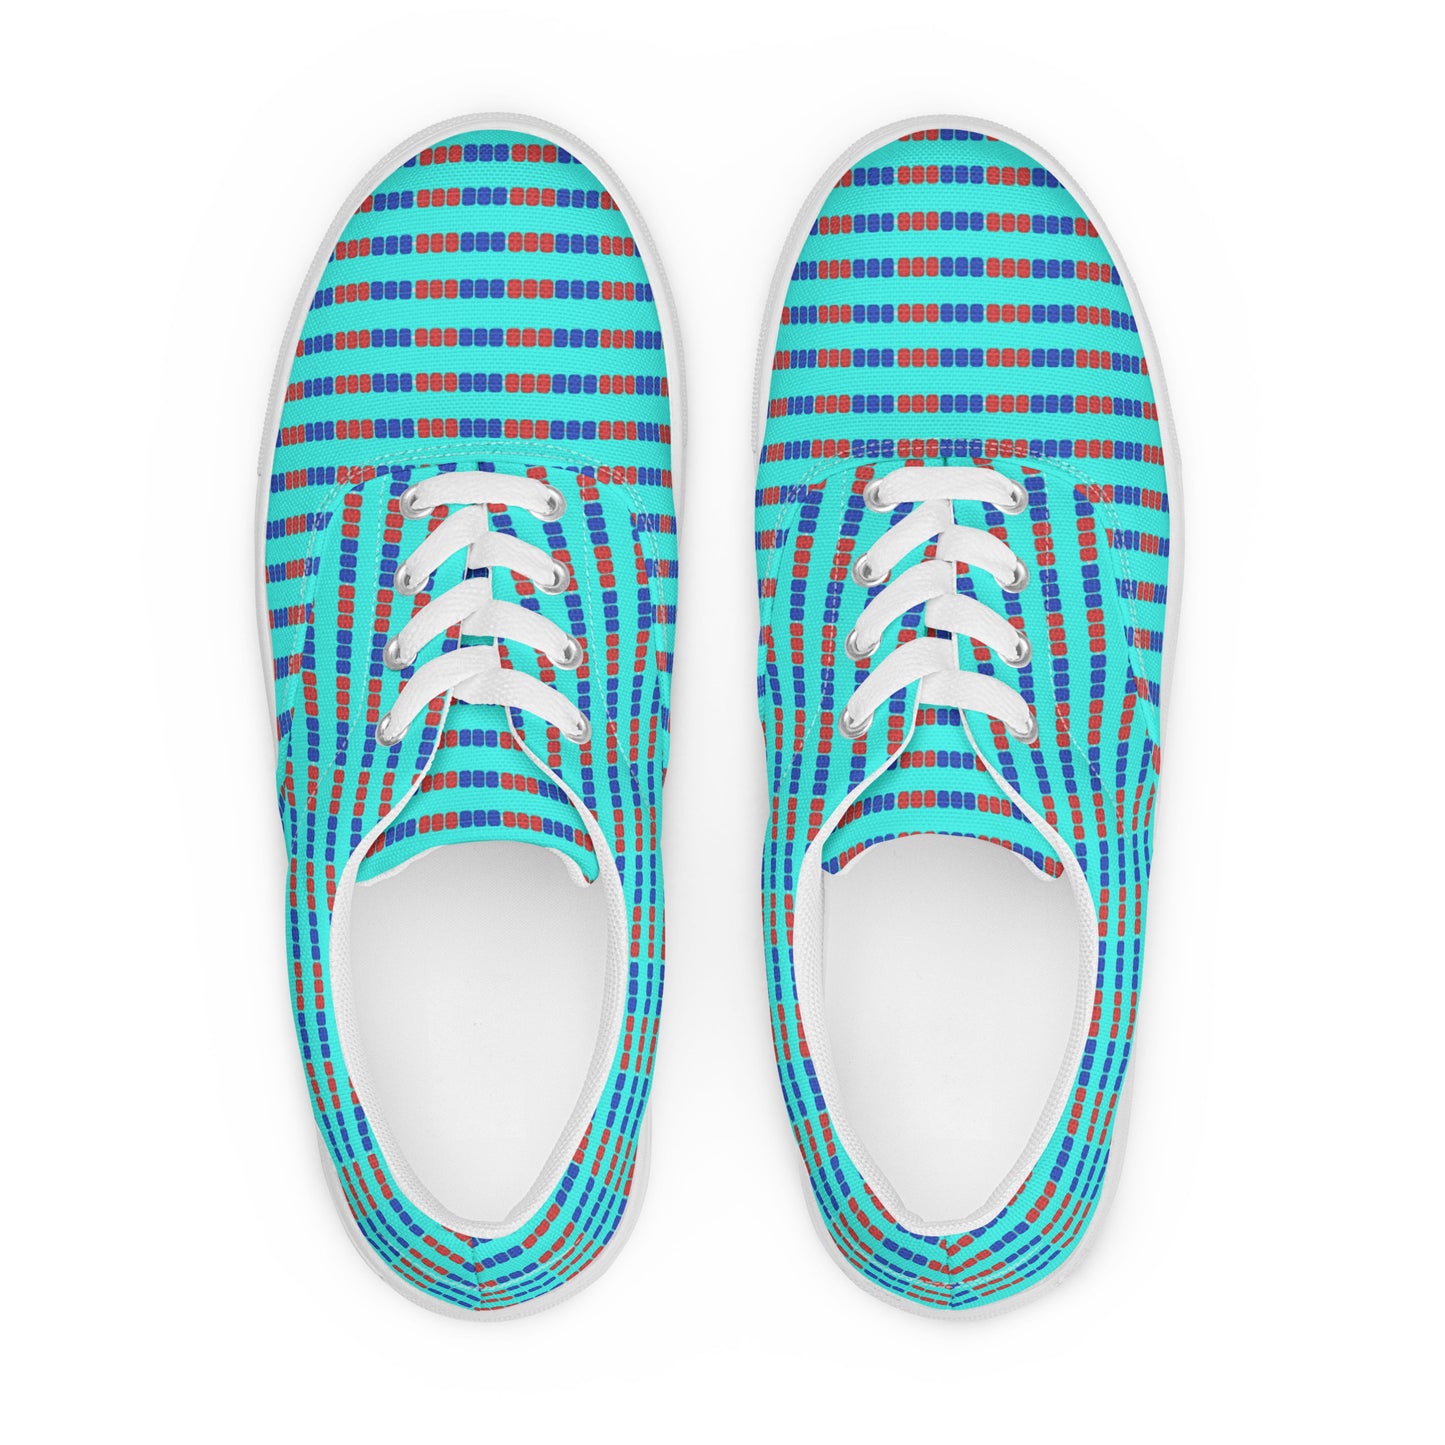 Swim Lane Stripes- Men’s lace-up canvas shoes